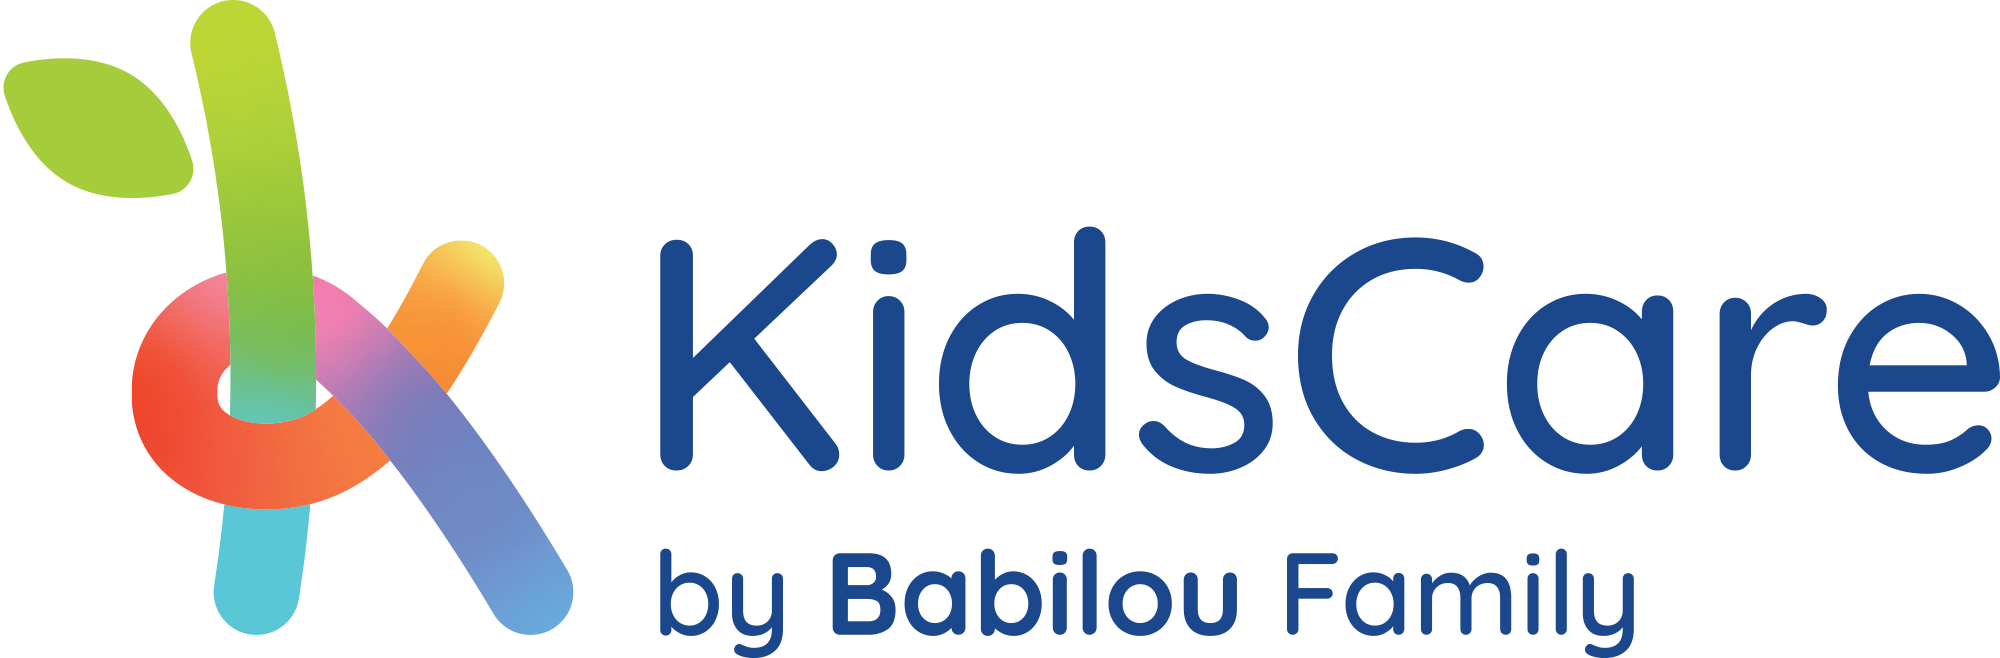 KidsCare by Babilou Family